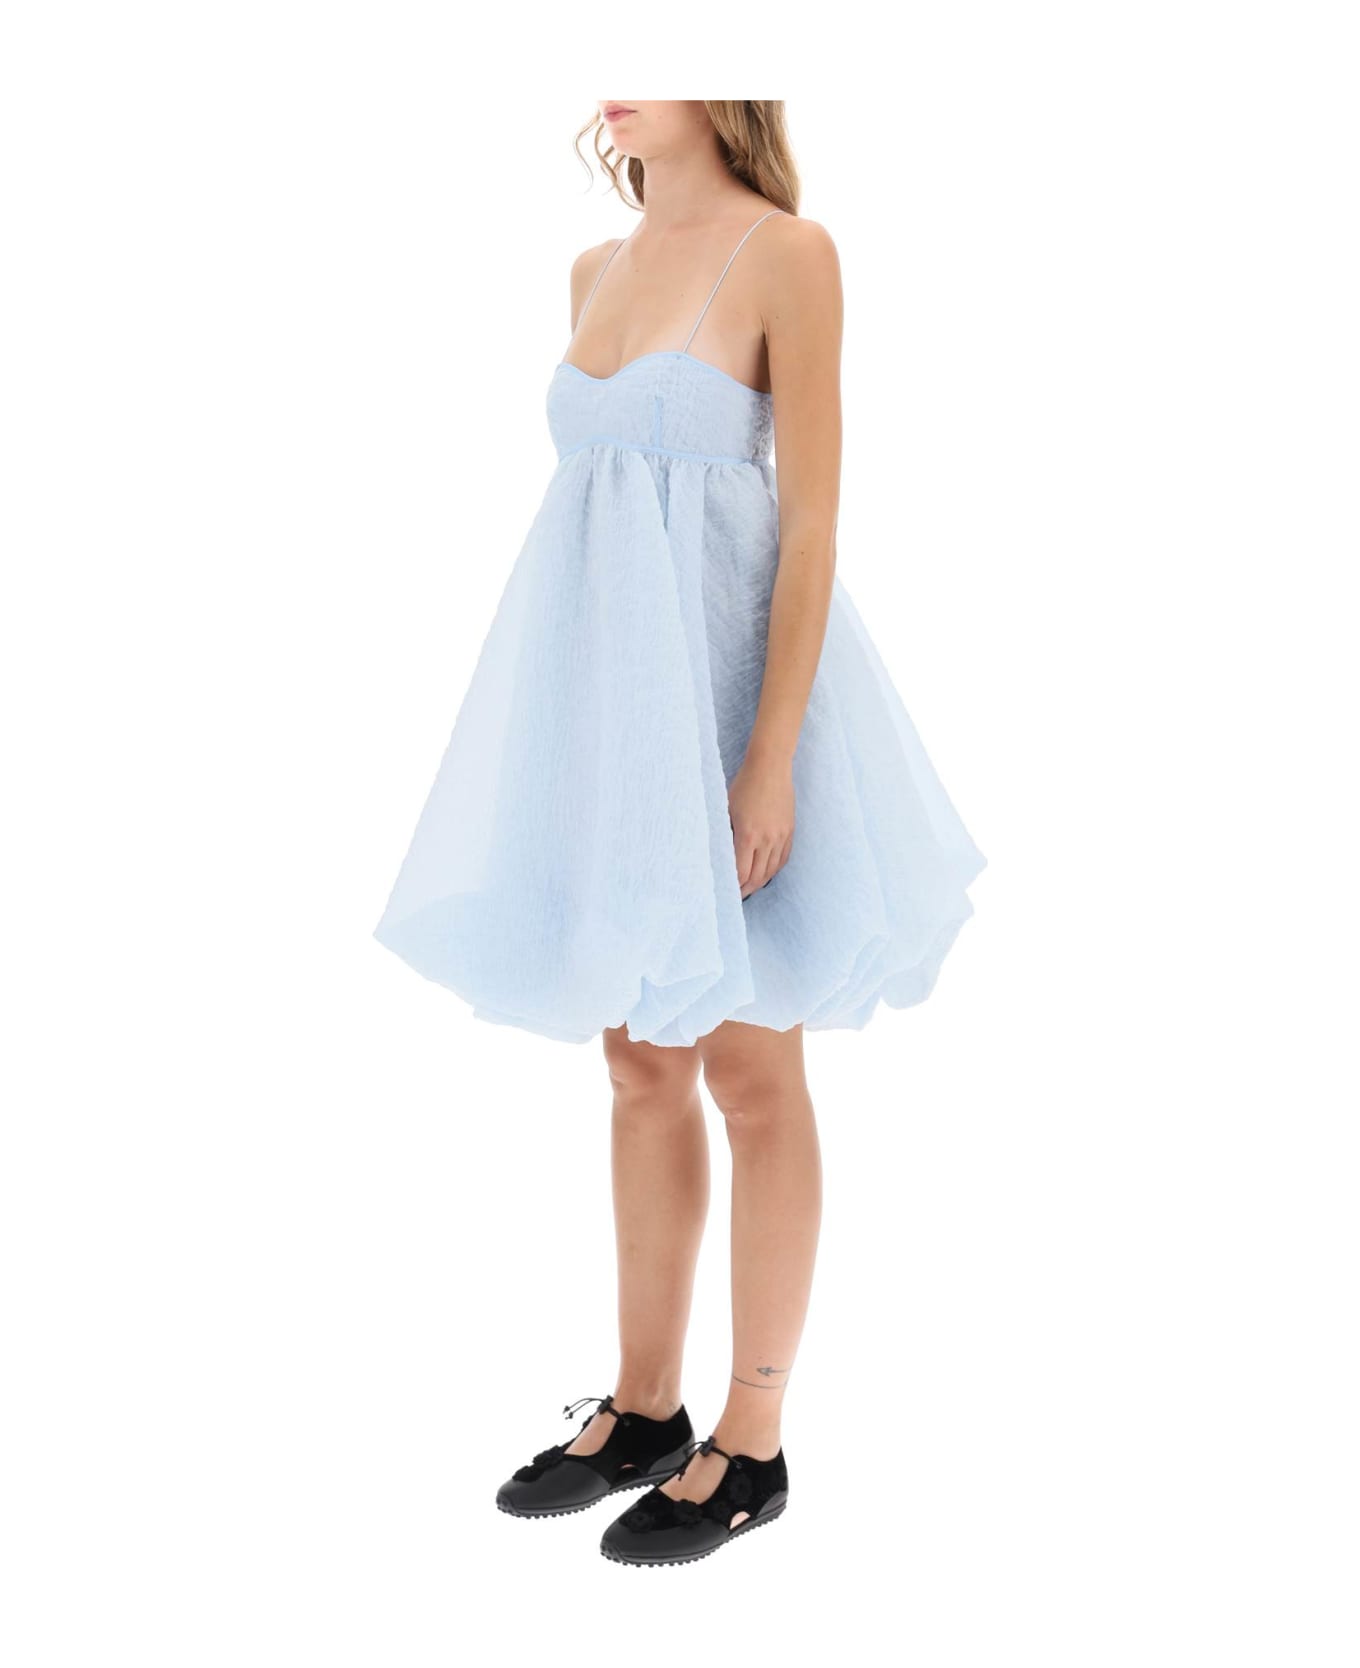 Cecilie Bahnsen Sunni Empire Waist Mini Dress - LIGHT BLUE (Light blue)